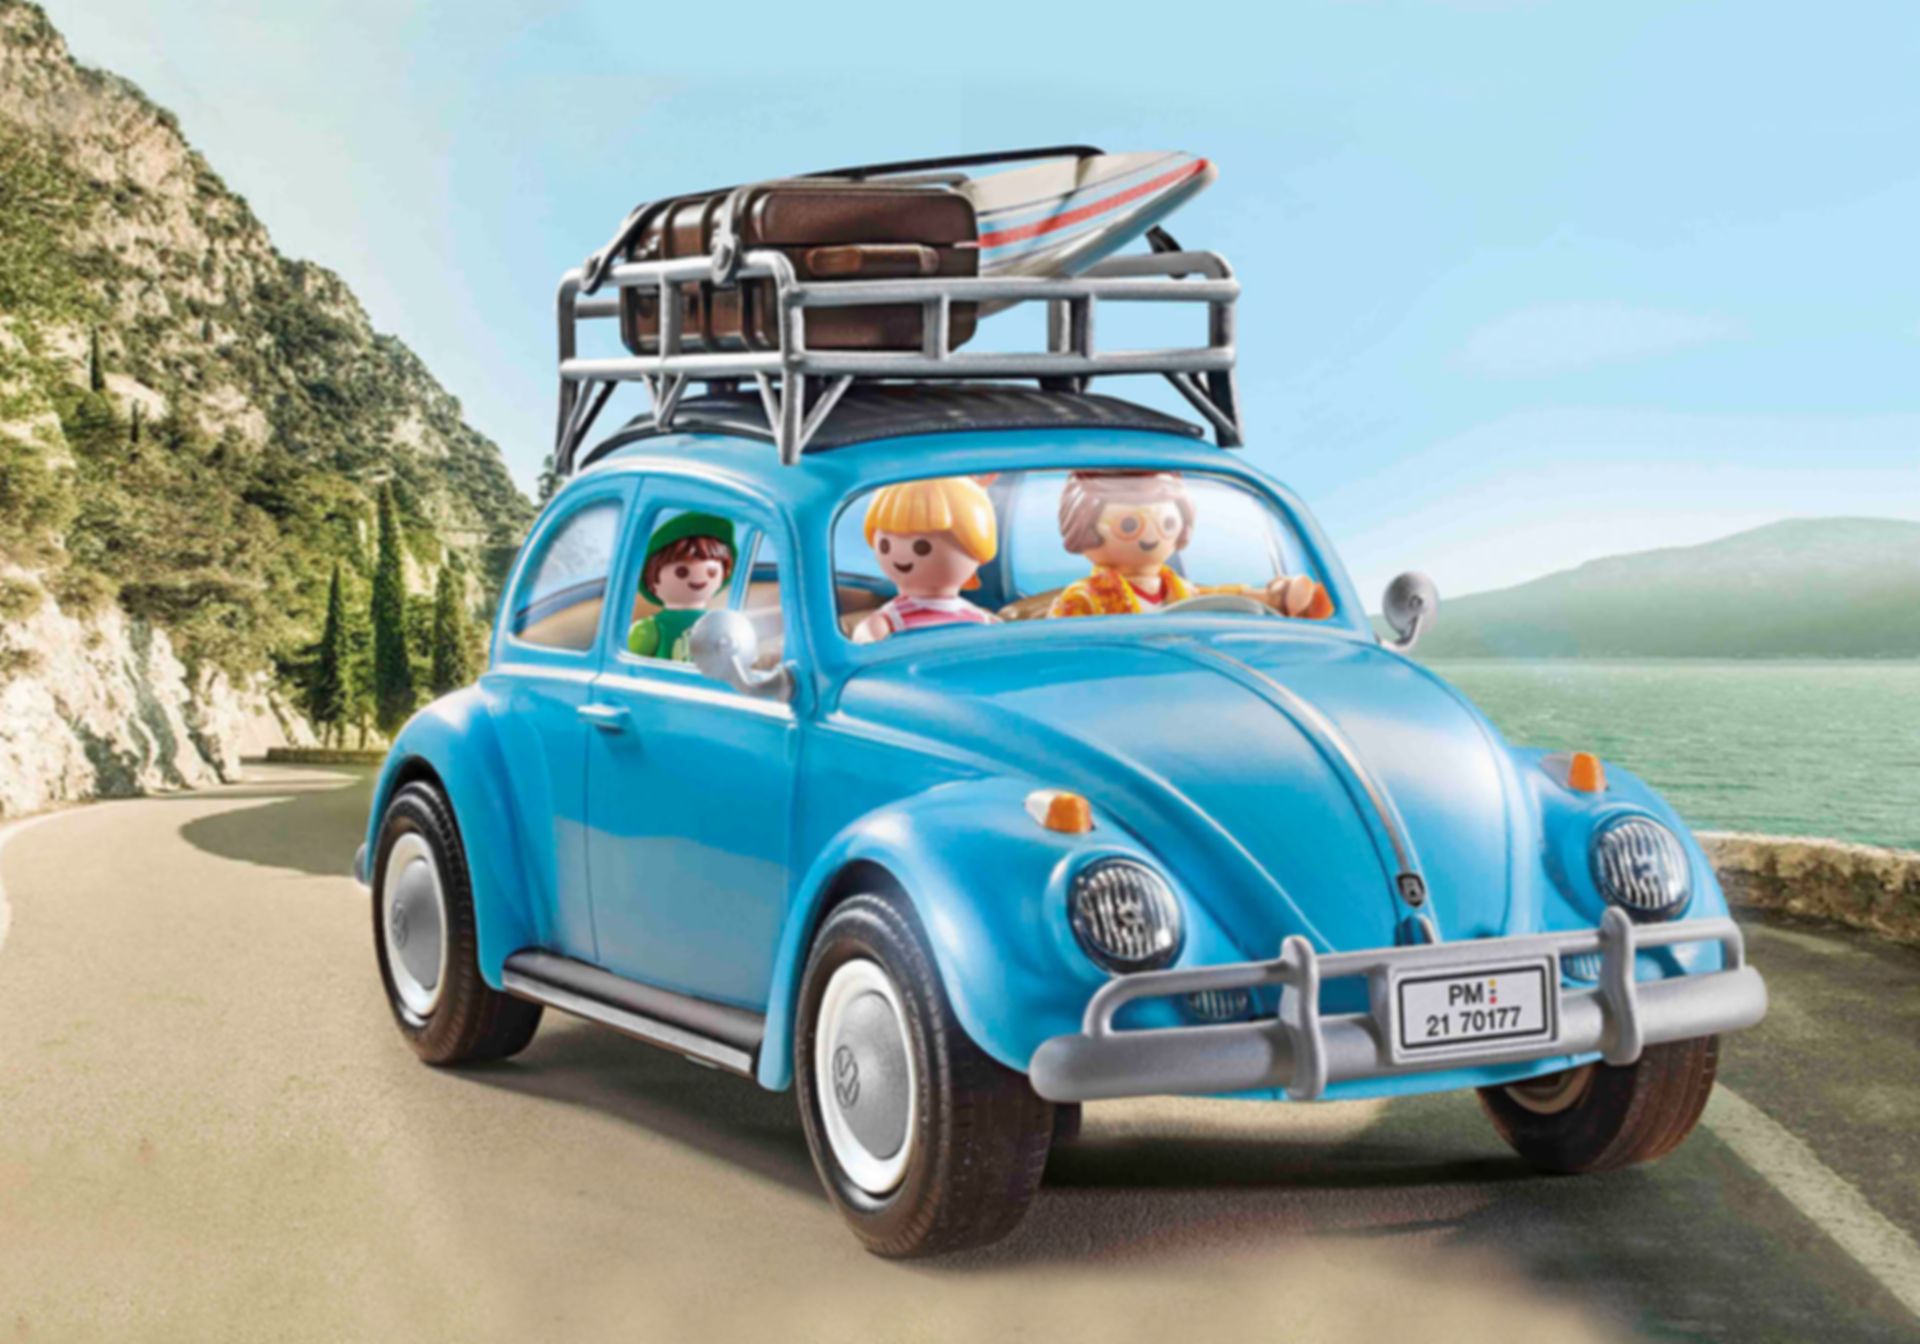 Playmobil® Volkswagen Volkswagen Beetle gameplay